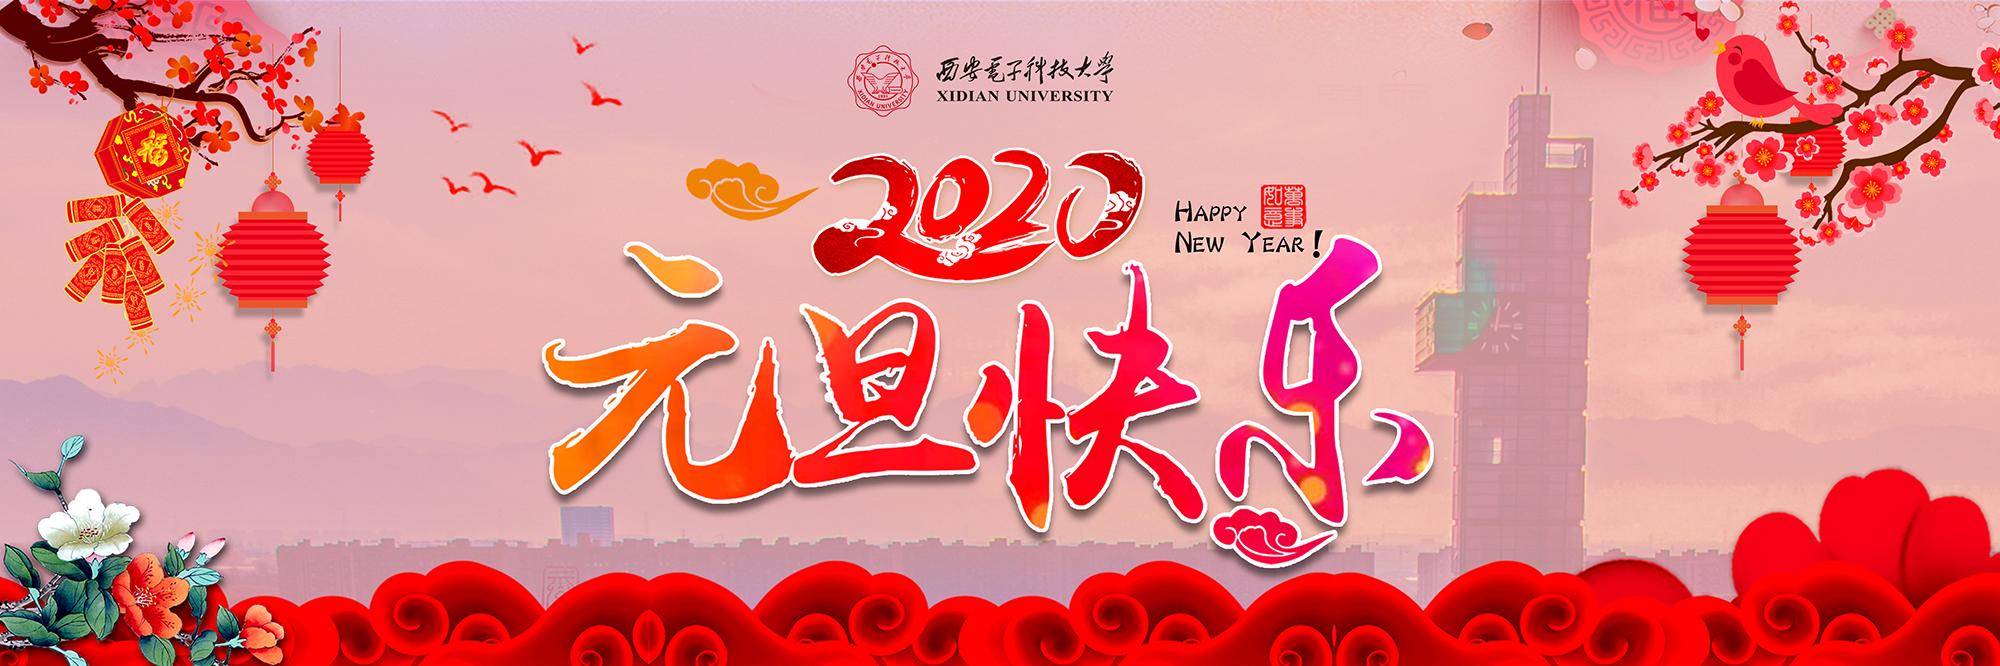 党委书记查显友、校长杨宗凯发表2020年新年贺词